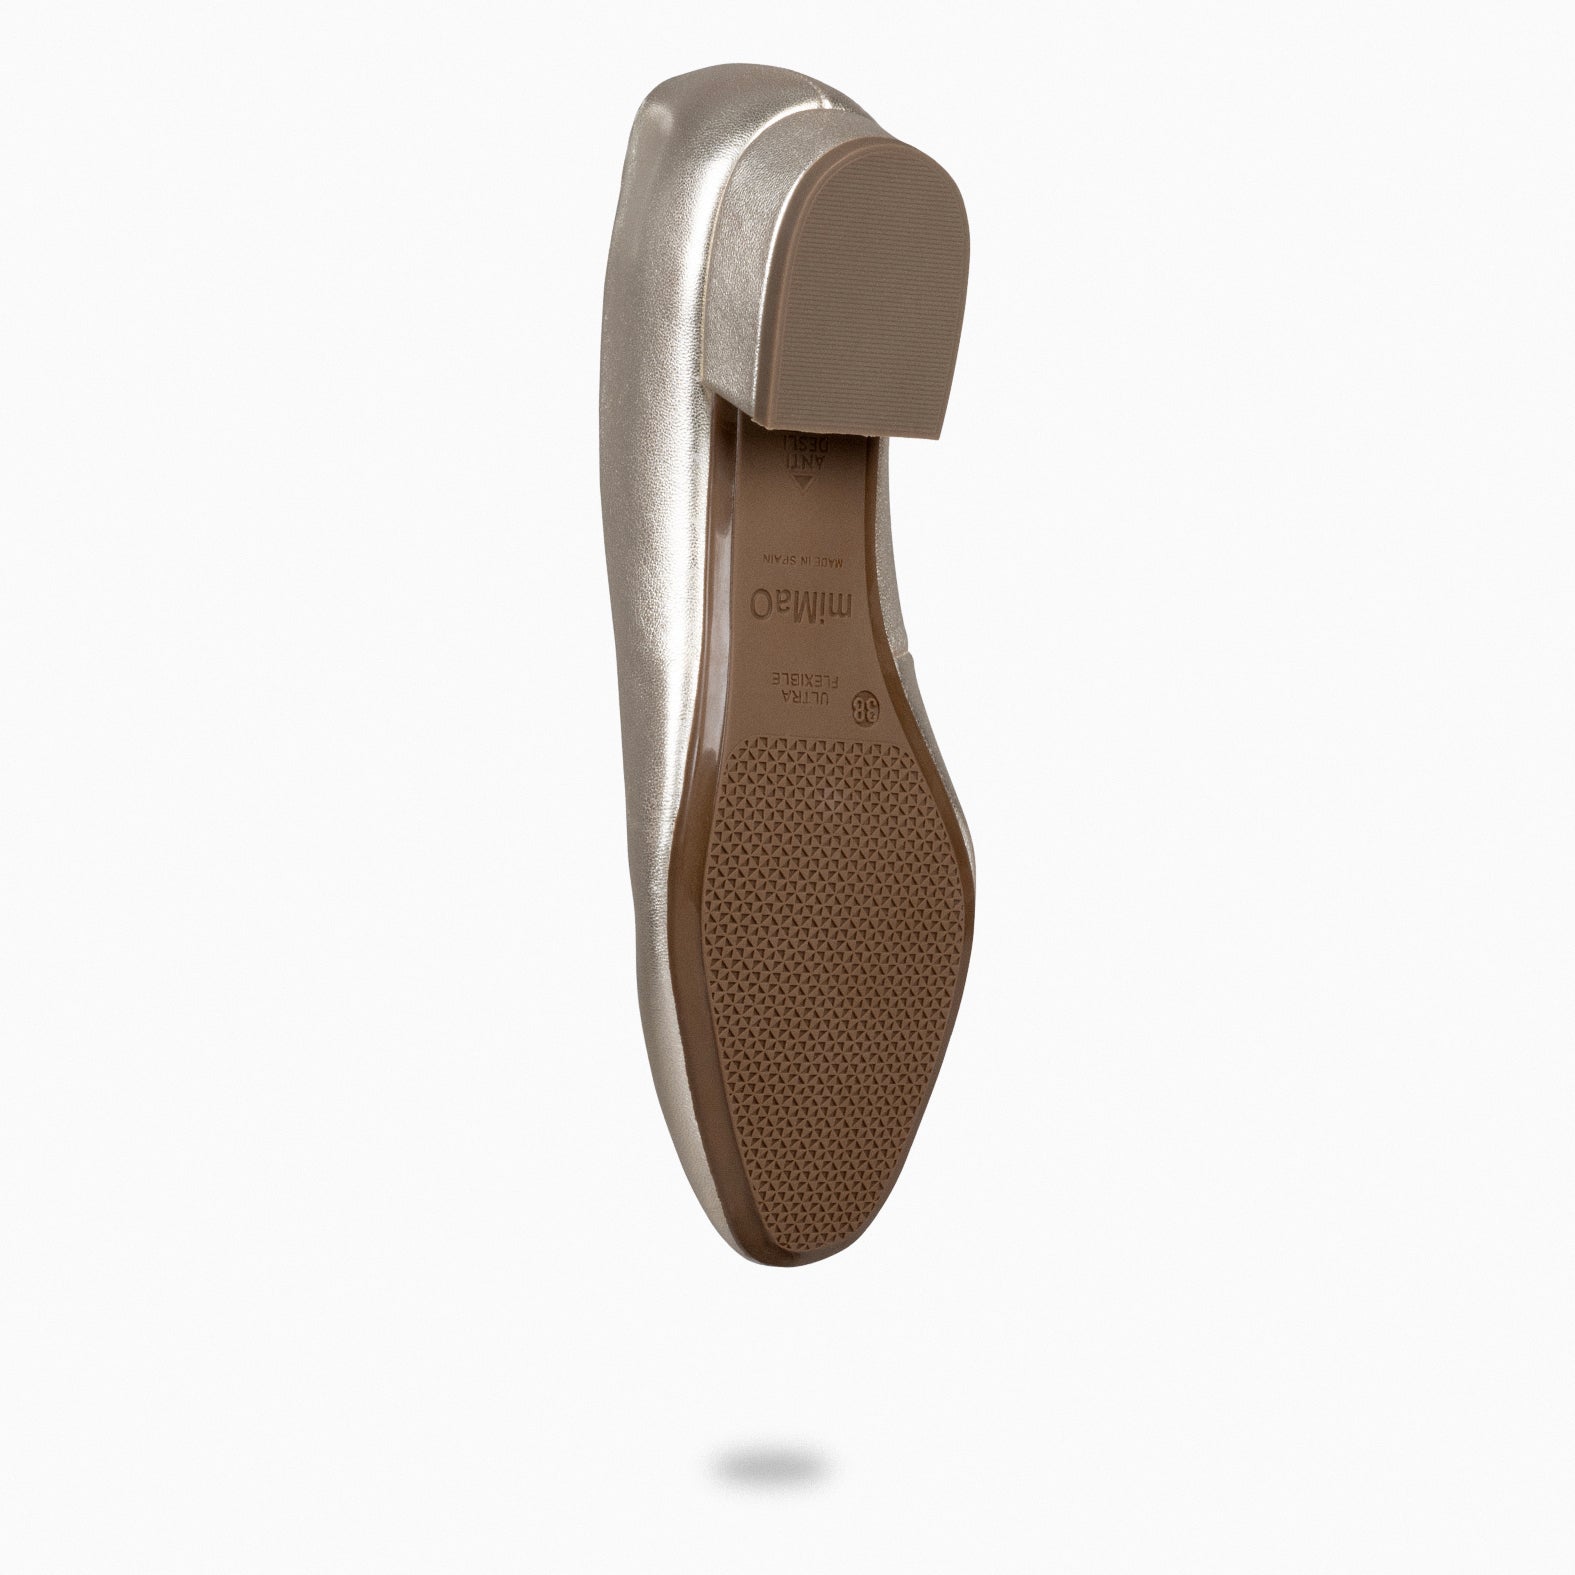 URBAN XS – Zapatos de tacón bajo de napa metalizada PLATINO